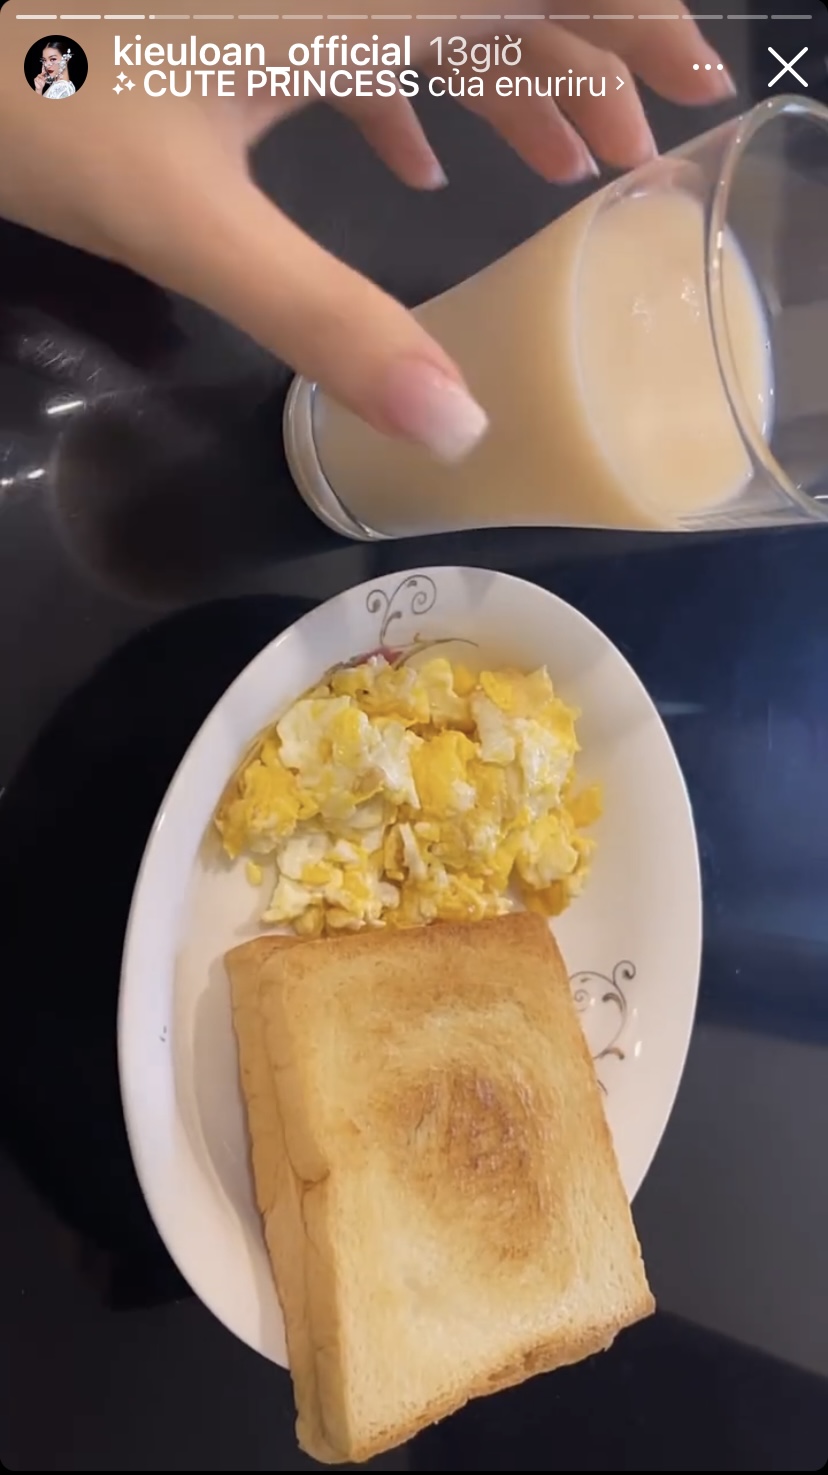 Bánh mì nướng ăn kèm trứng ngoáy và một cốc sữa là thực đơn sáng quen thuộc của Á hậu Kiều Loan.